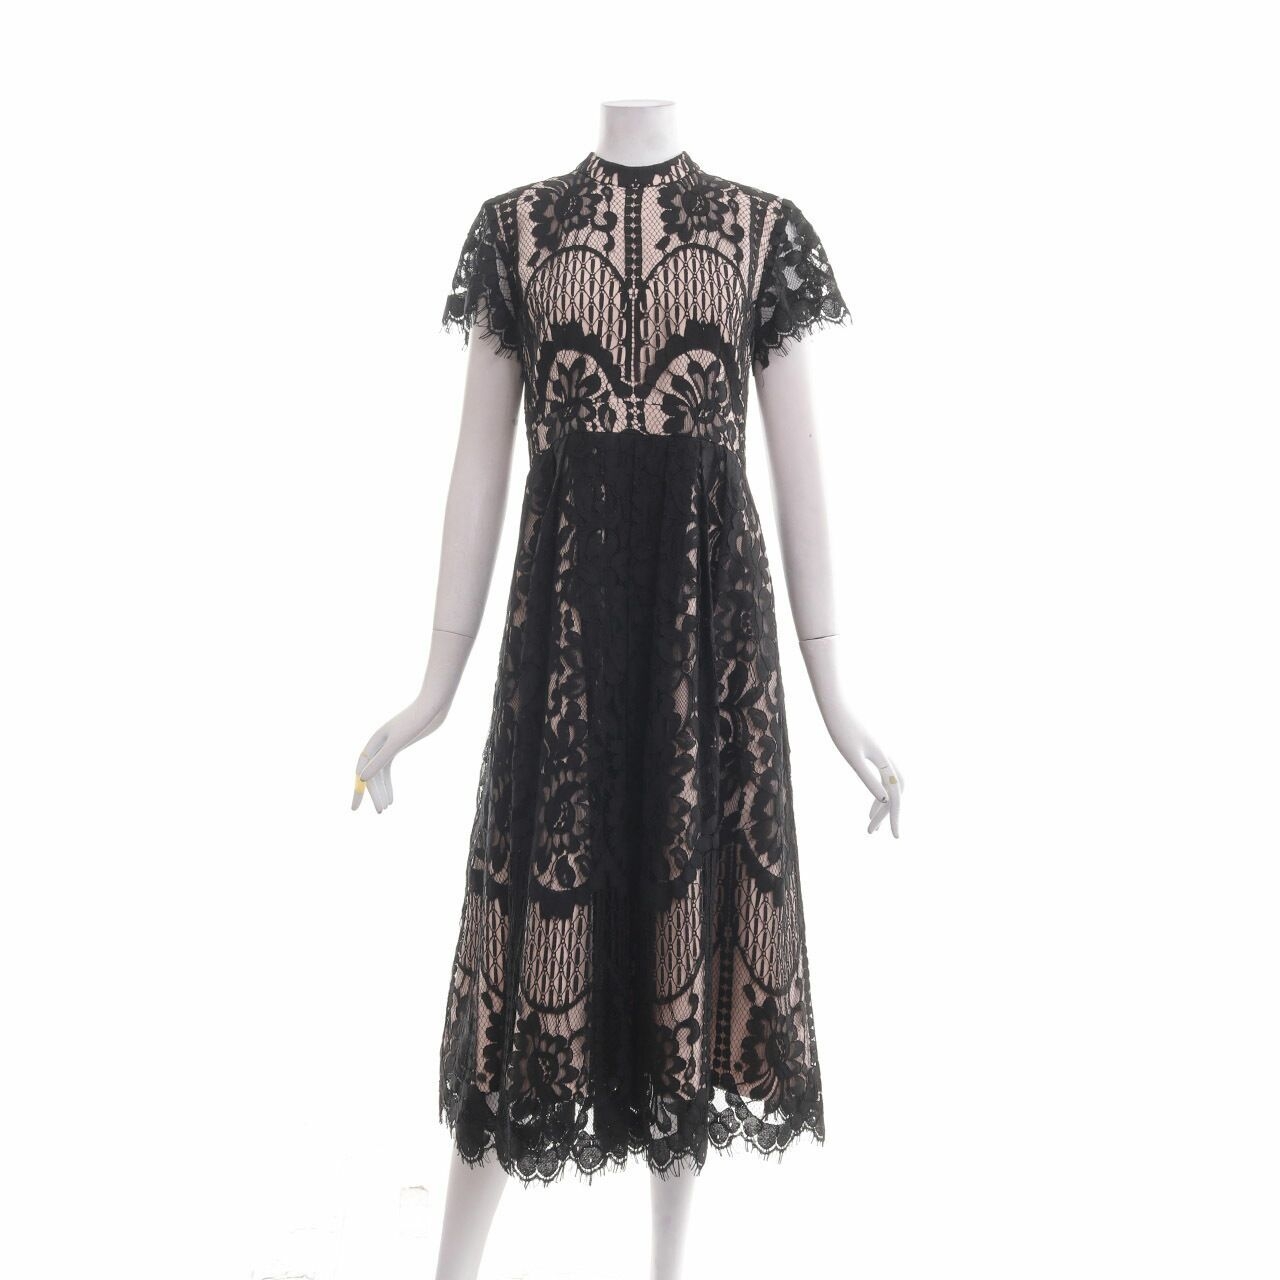 Poshture Black Lace Long Dress